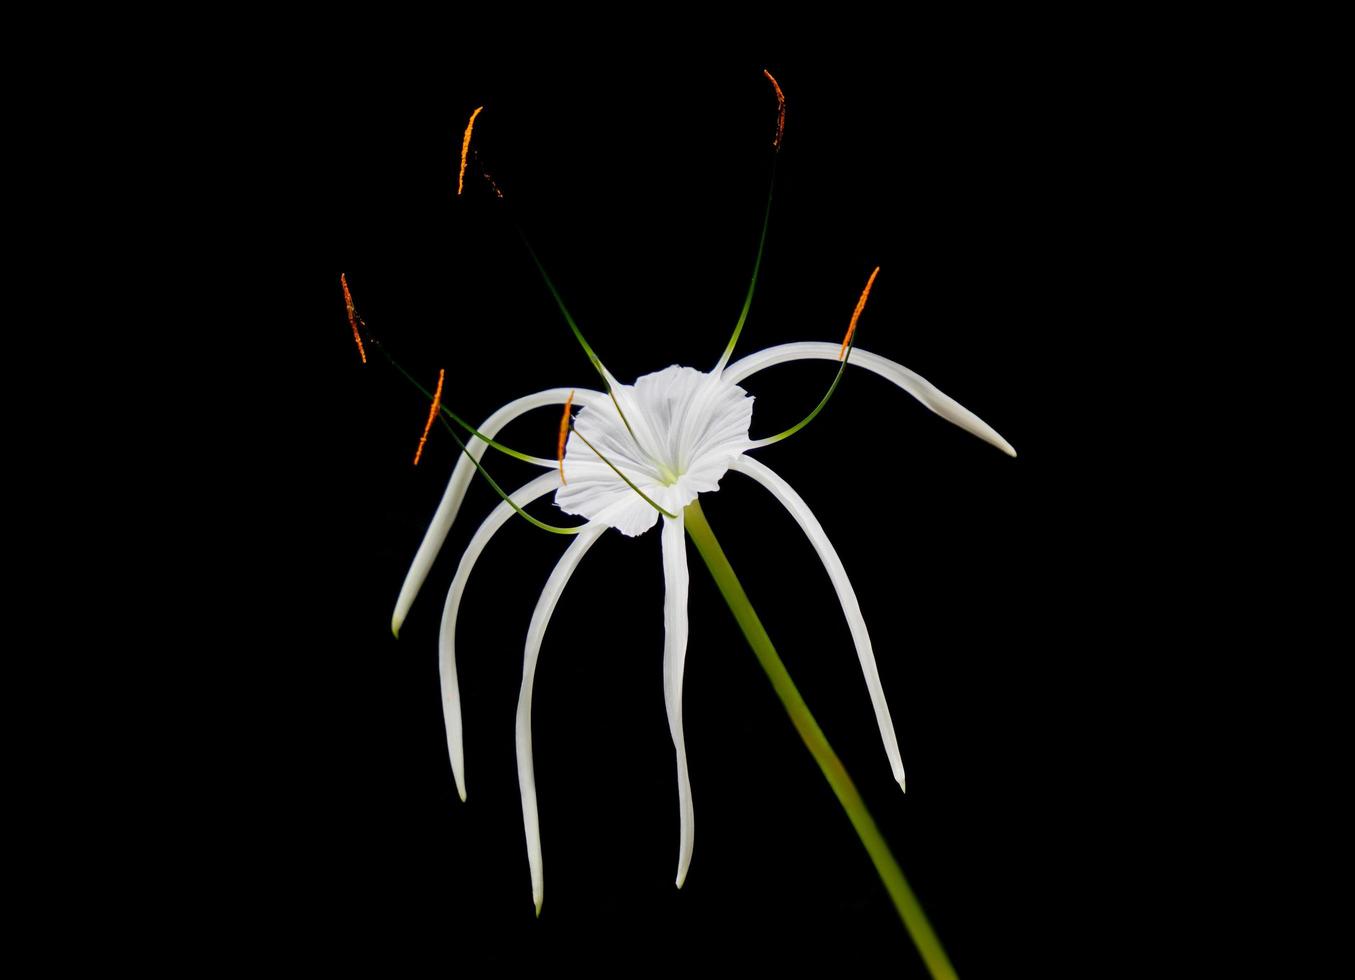 hymenocallis speciosa, le spiderlily vert, une plante à fleurs blanches isolée sur fond noir. une jolie fleur fraîche dans la nature. photo